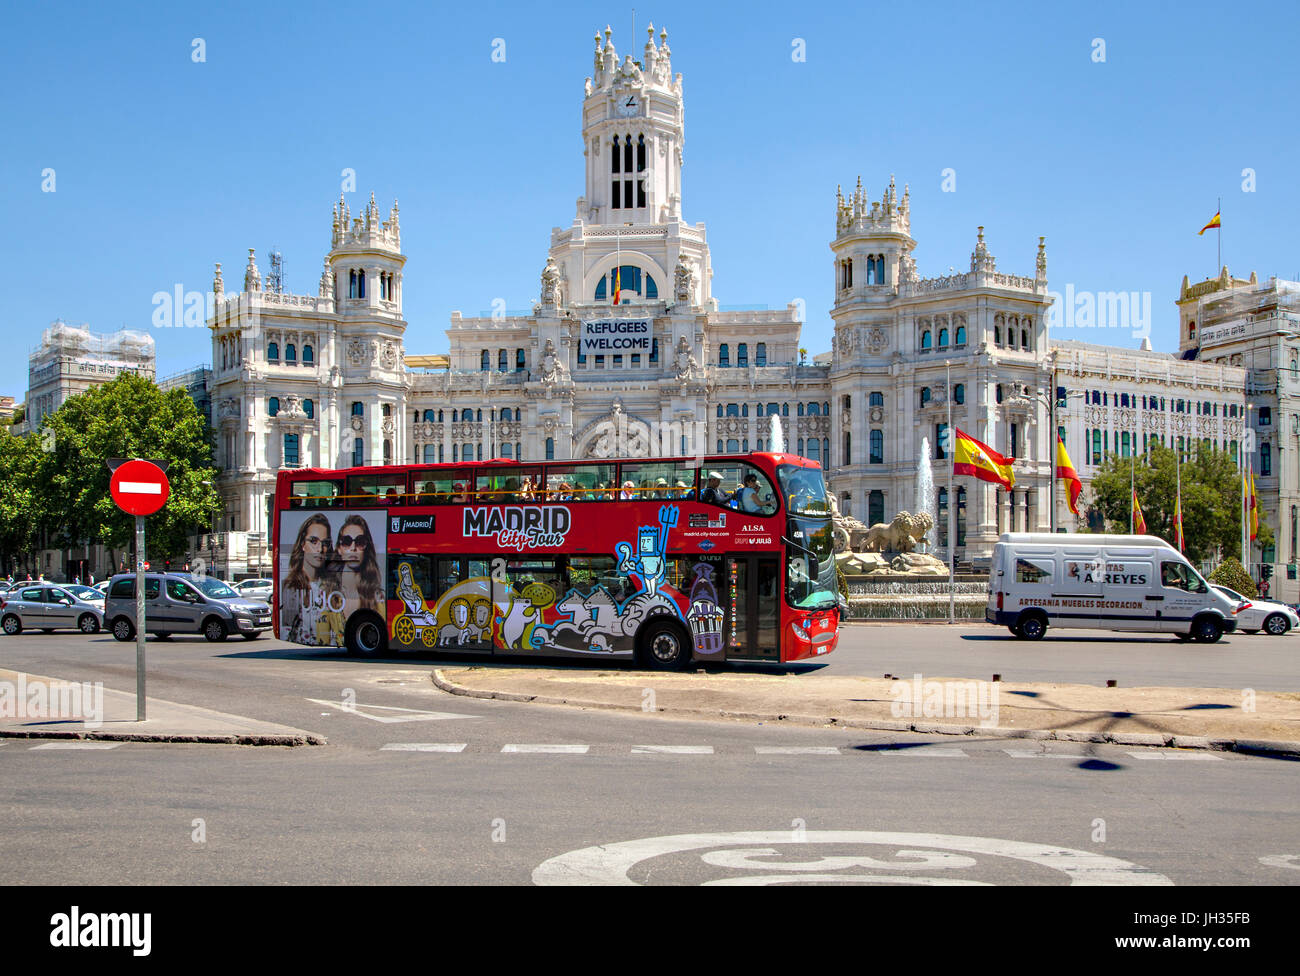 Madrid-Sightseeing-Bus fahren rund um die Plaza de Cibeles und Weitergabe der Cybele Palast / Rathaus mit einem Schild sagt Flüchtlinge willkommen Stockfoto